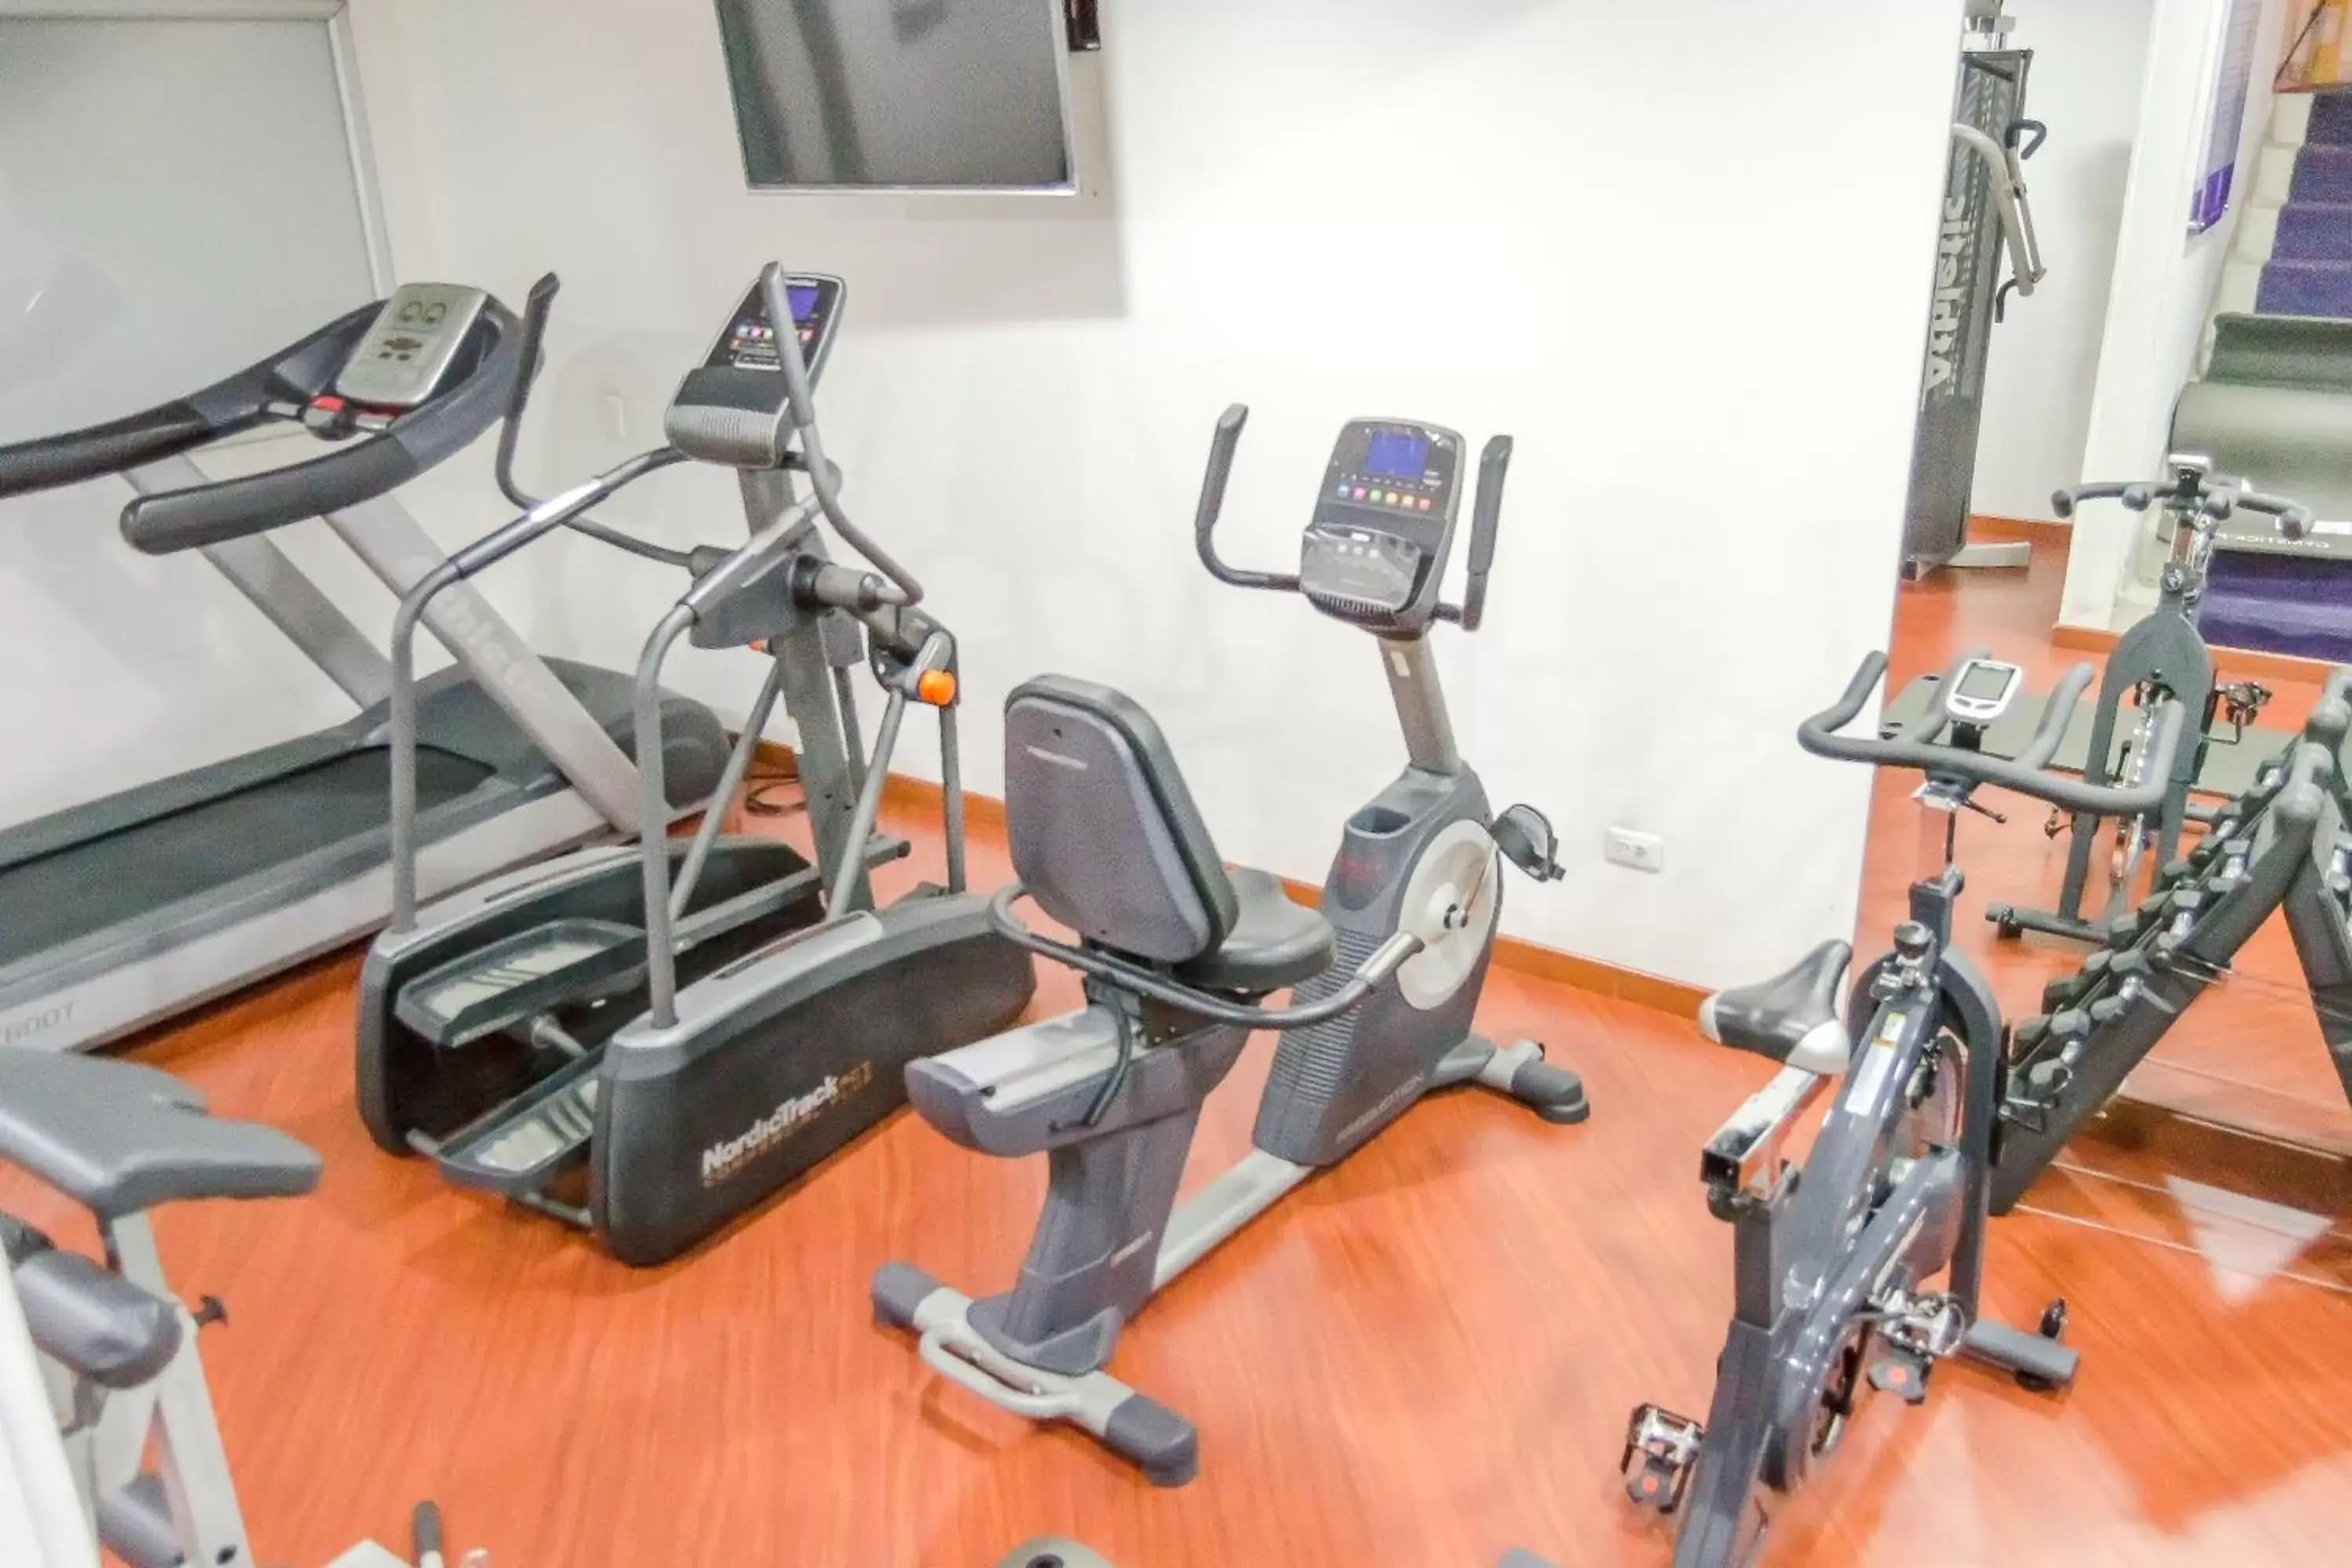 Fitness centre/facilities, Fitness Center/Facilities in Hotel Bogotá Regency Usaquén